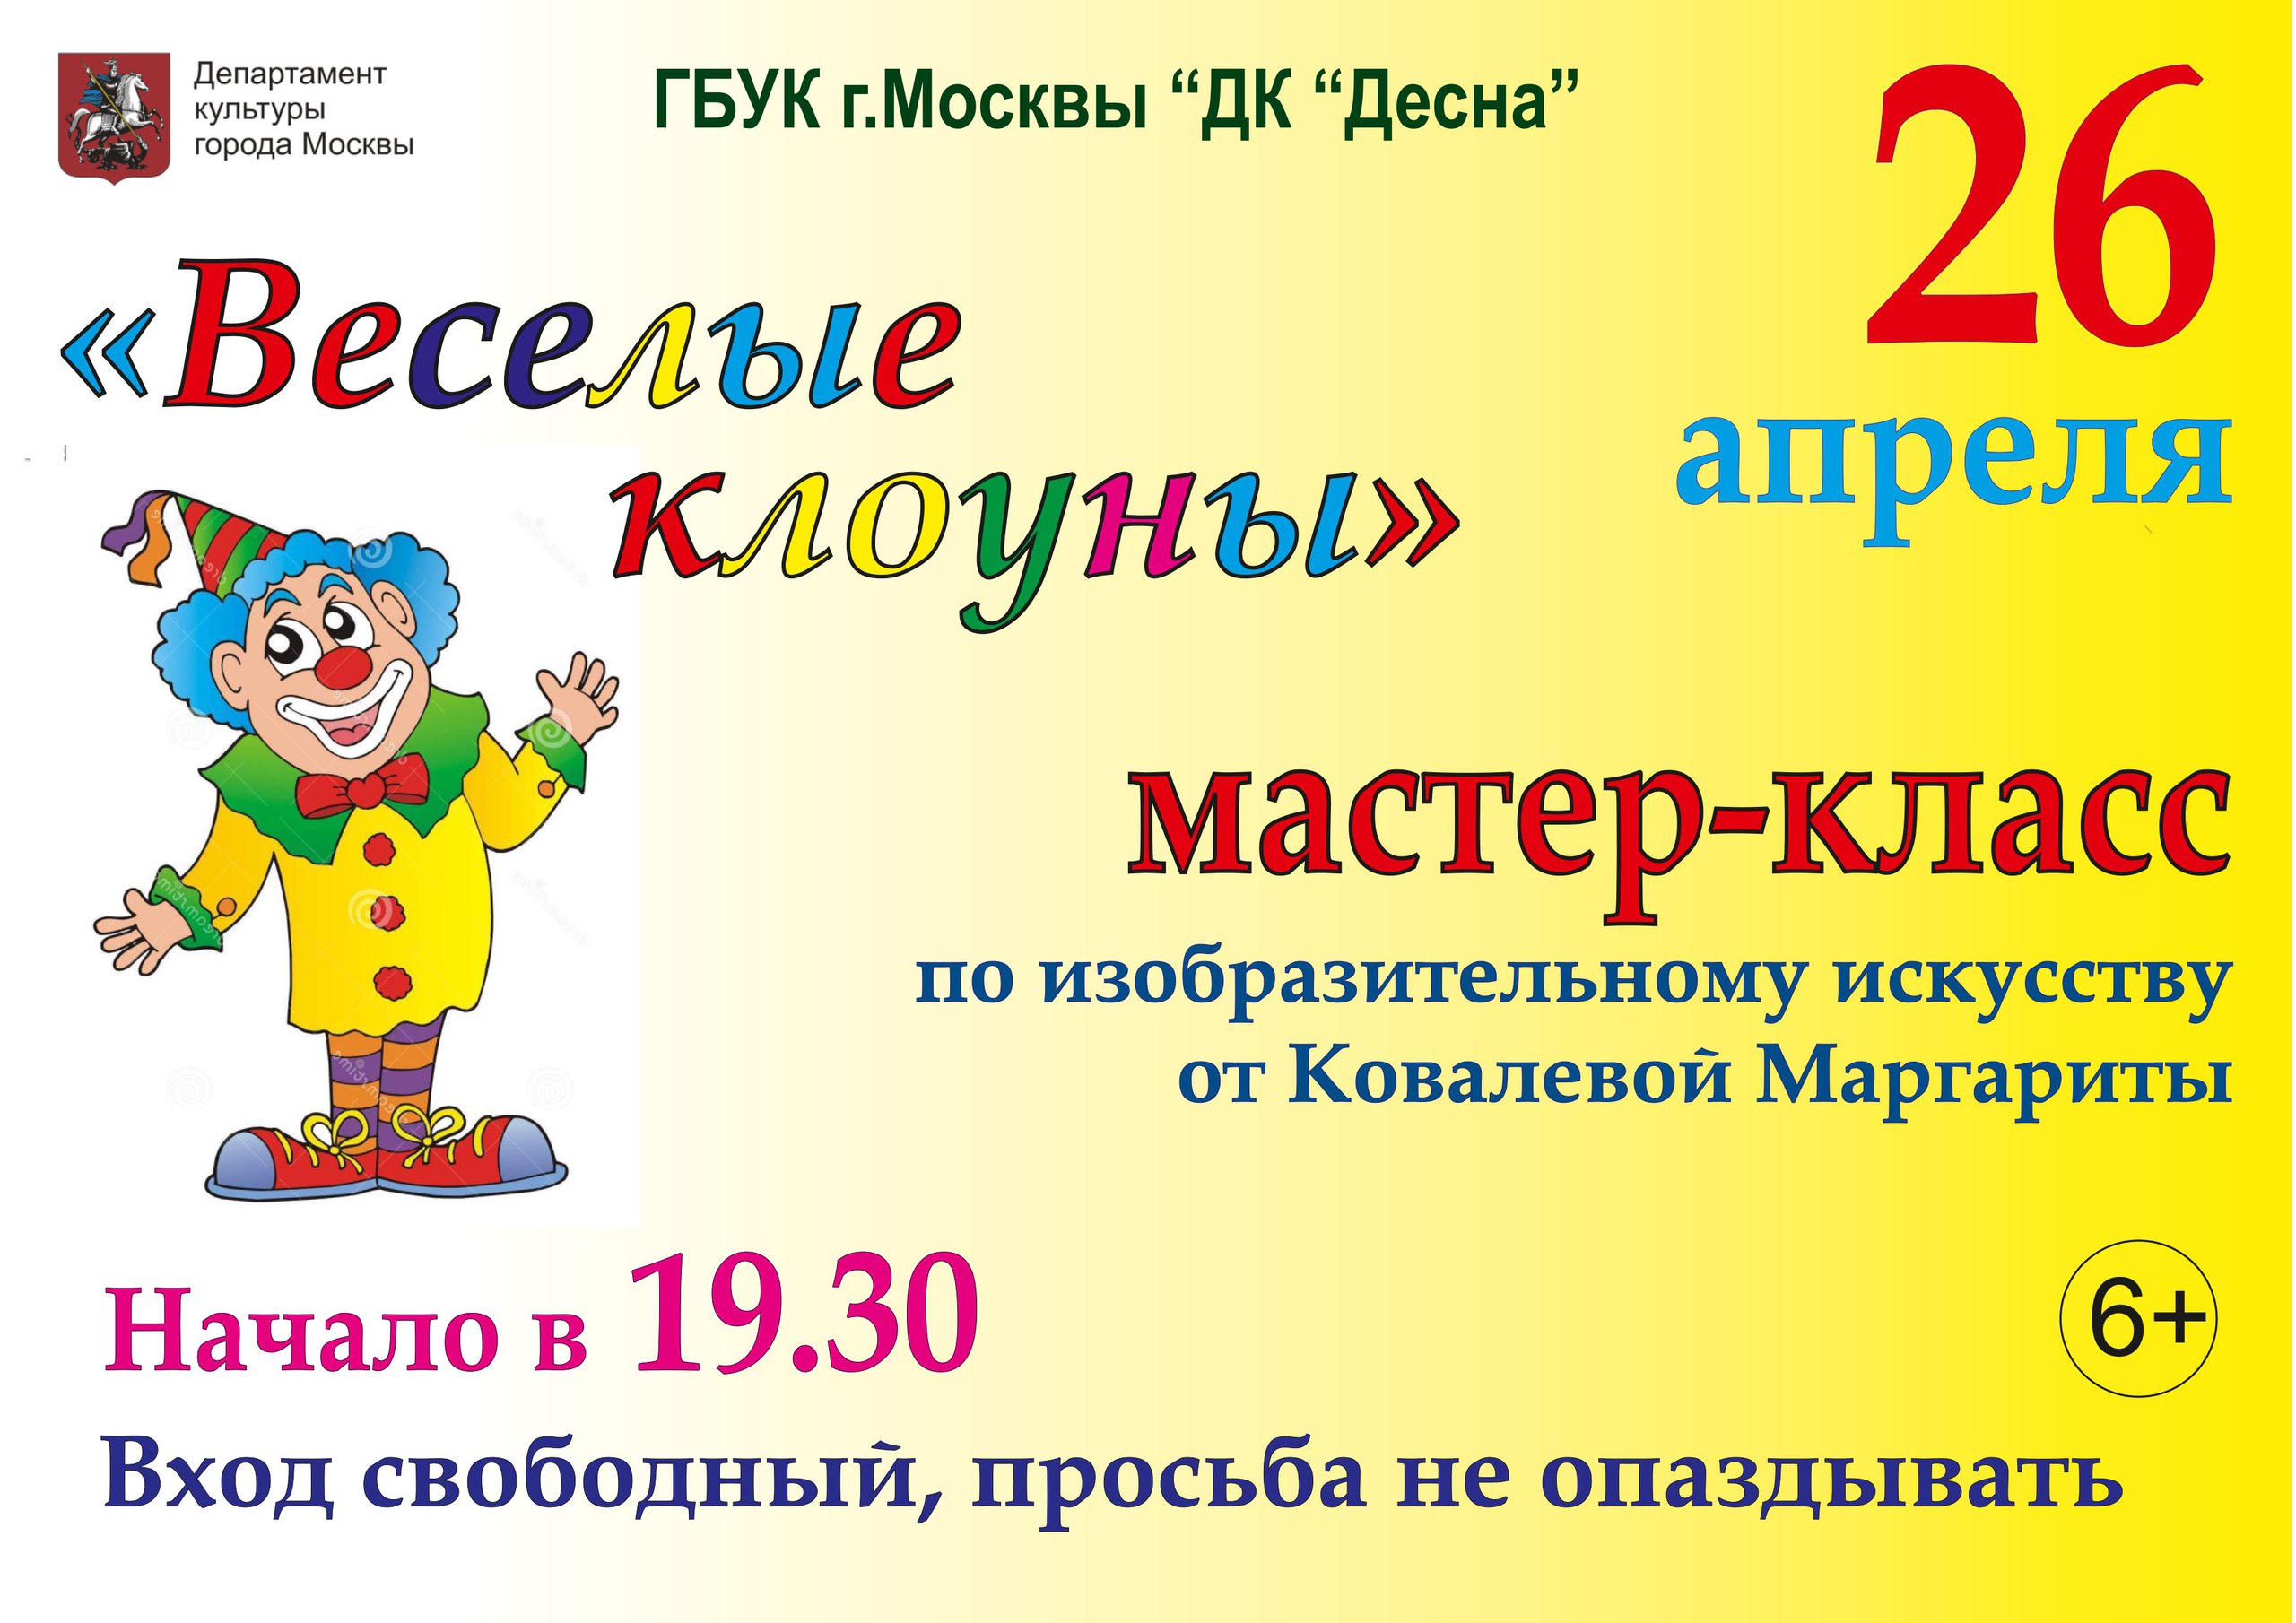 26 апреля в Доме культуры "Десна" состоится мастер-класс по изобразительному искусству от Ковалёвой Маргариты. Начало в 19:30  Вход свободный.